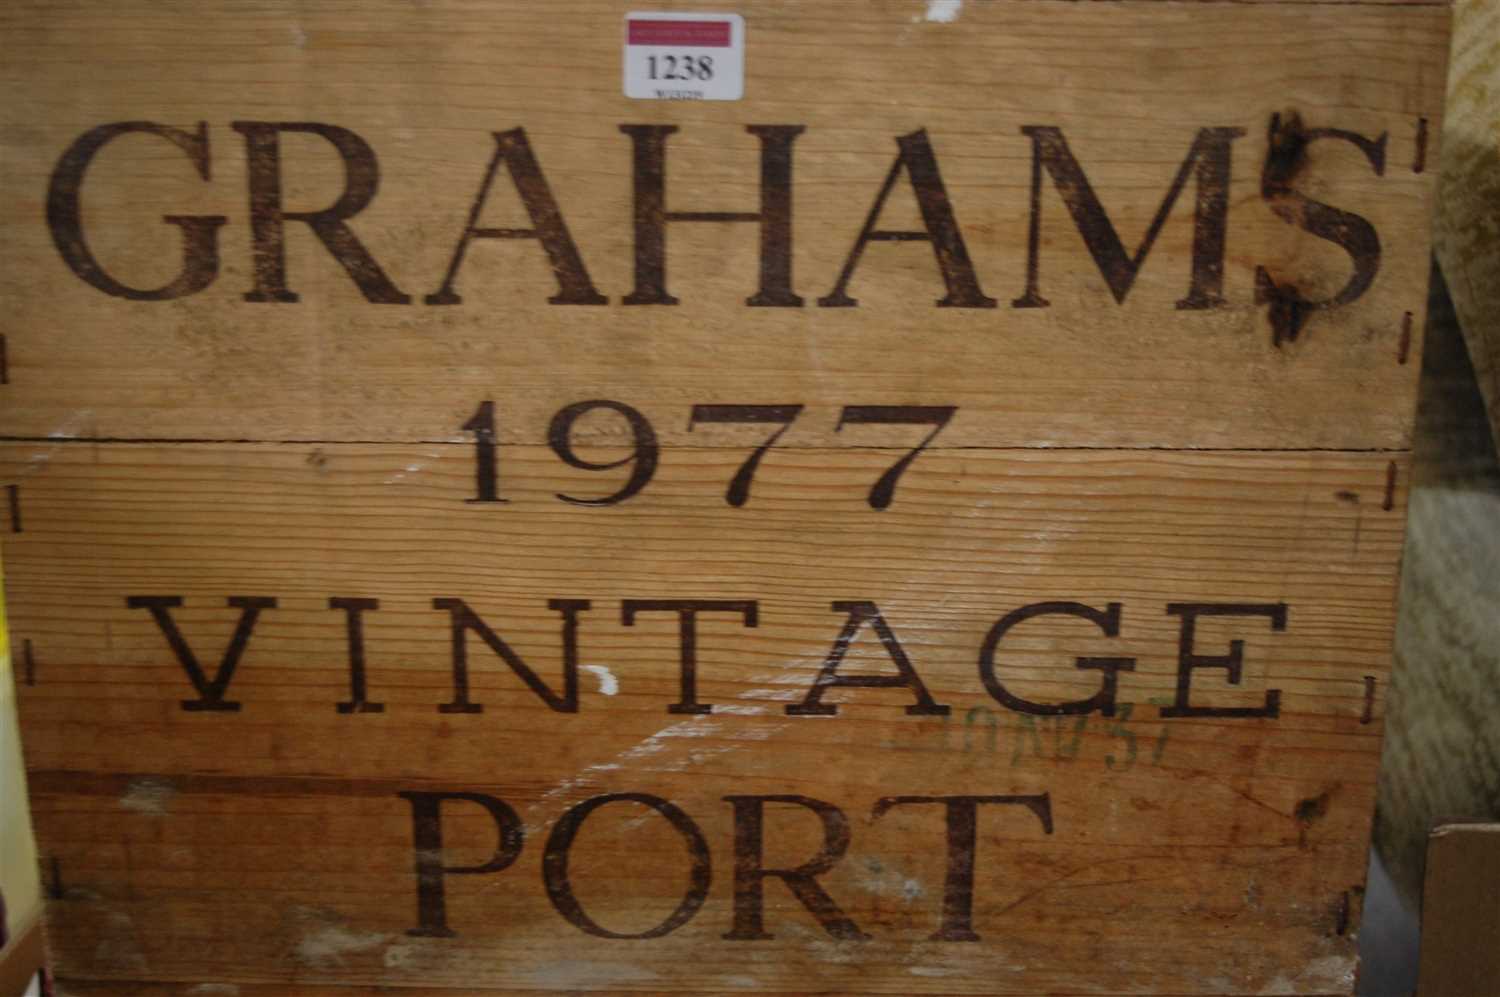 Lot 1238 - Graham's, 1977 vintage port, twelve bottles (OWC)